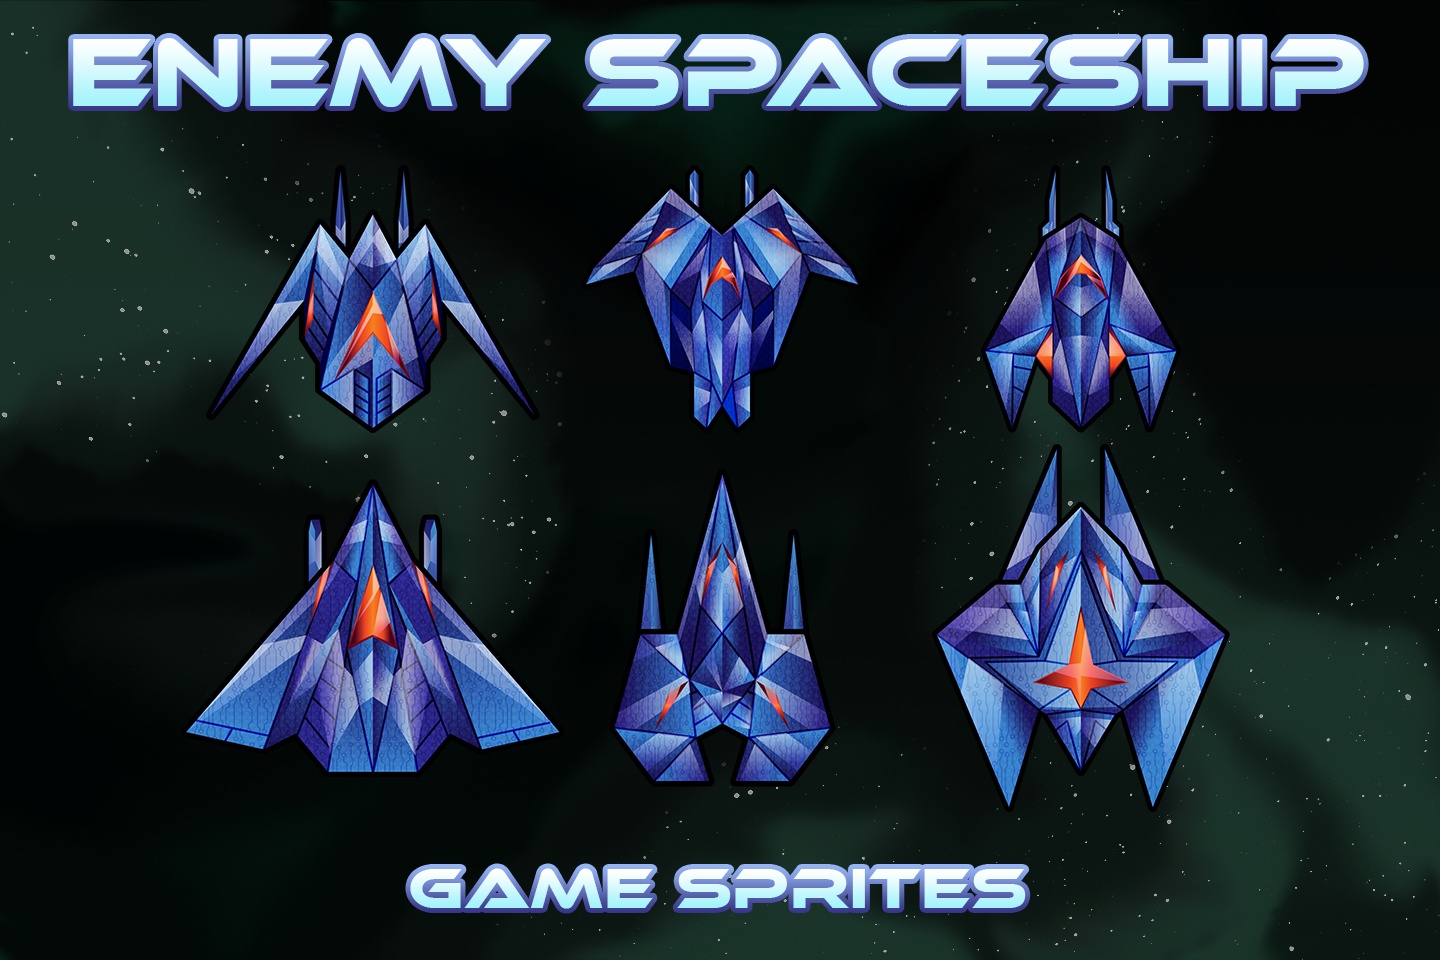 spaceship game